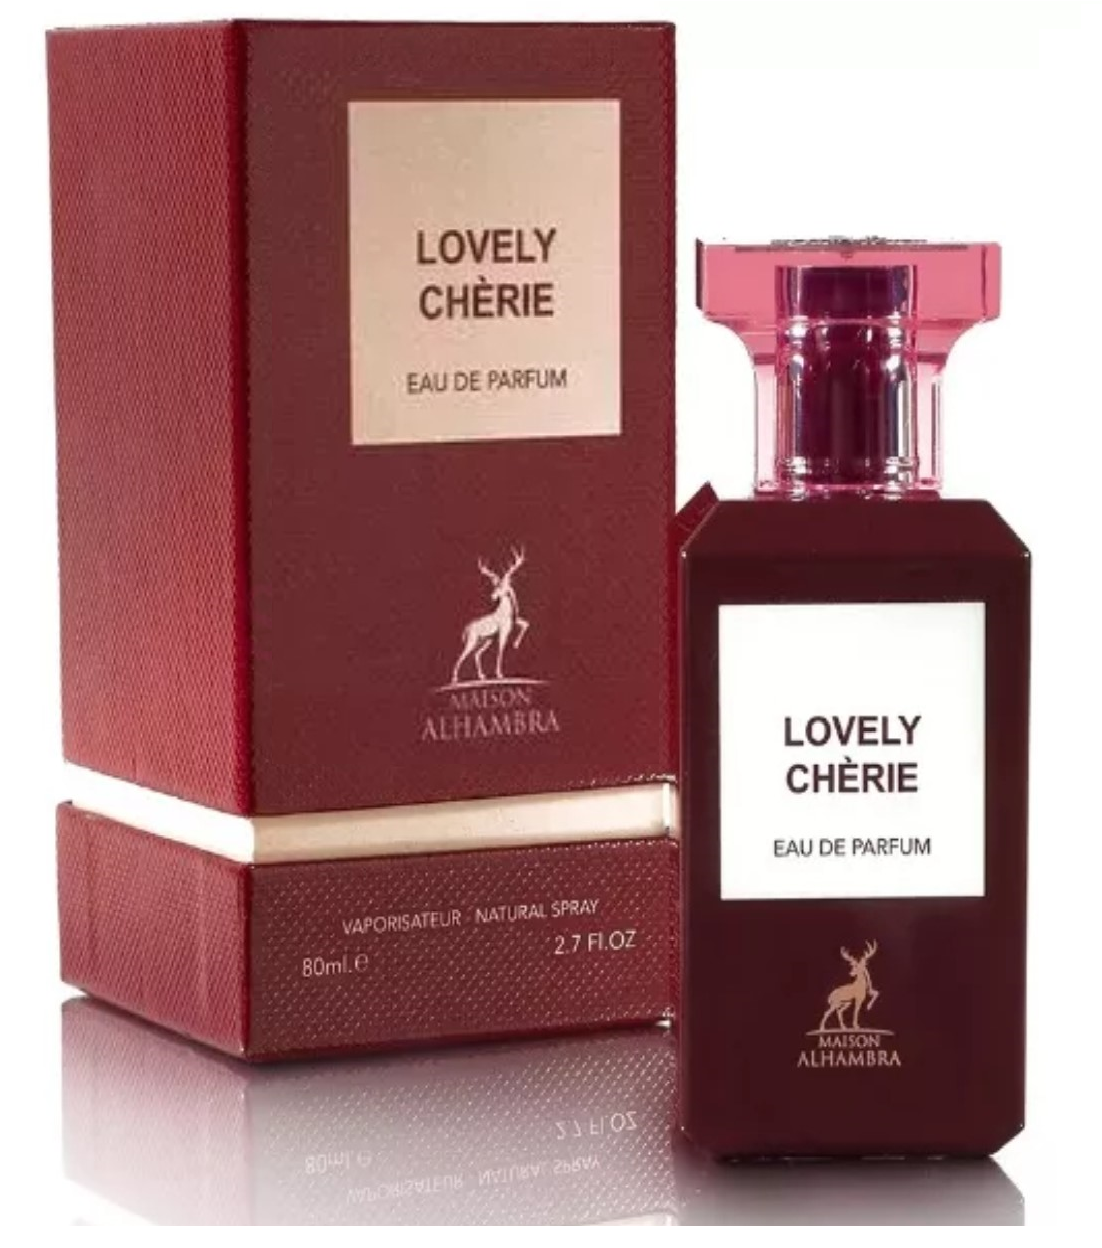 Lovely Cherie 80ml Eau De Parfum by Maison Alhambra